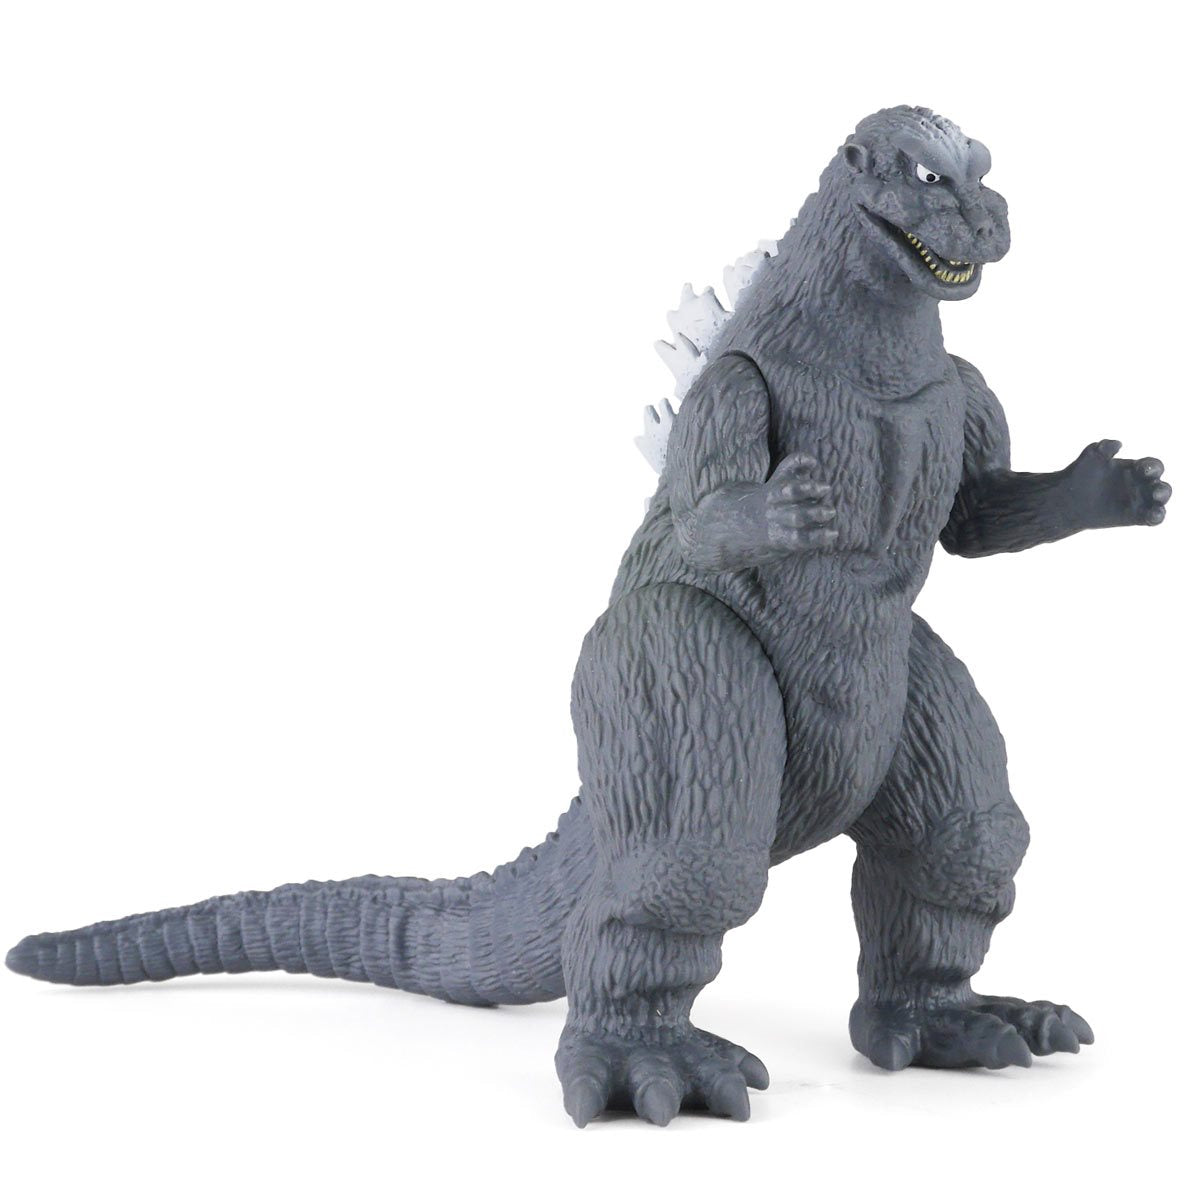 Bandai Movie Monster Series: Godzilla 1954 - Godzilla Figura De Accion